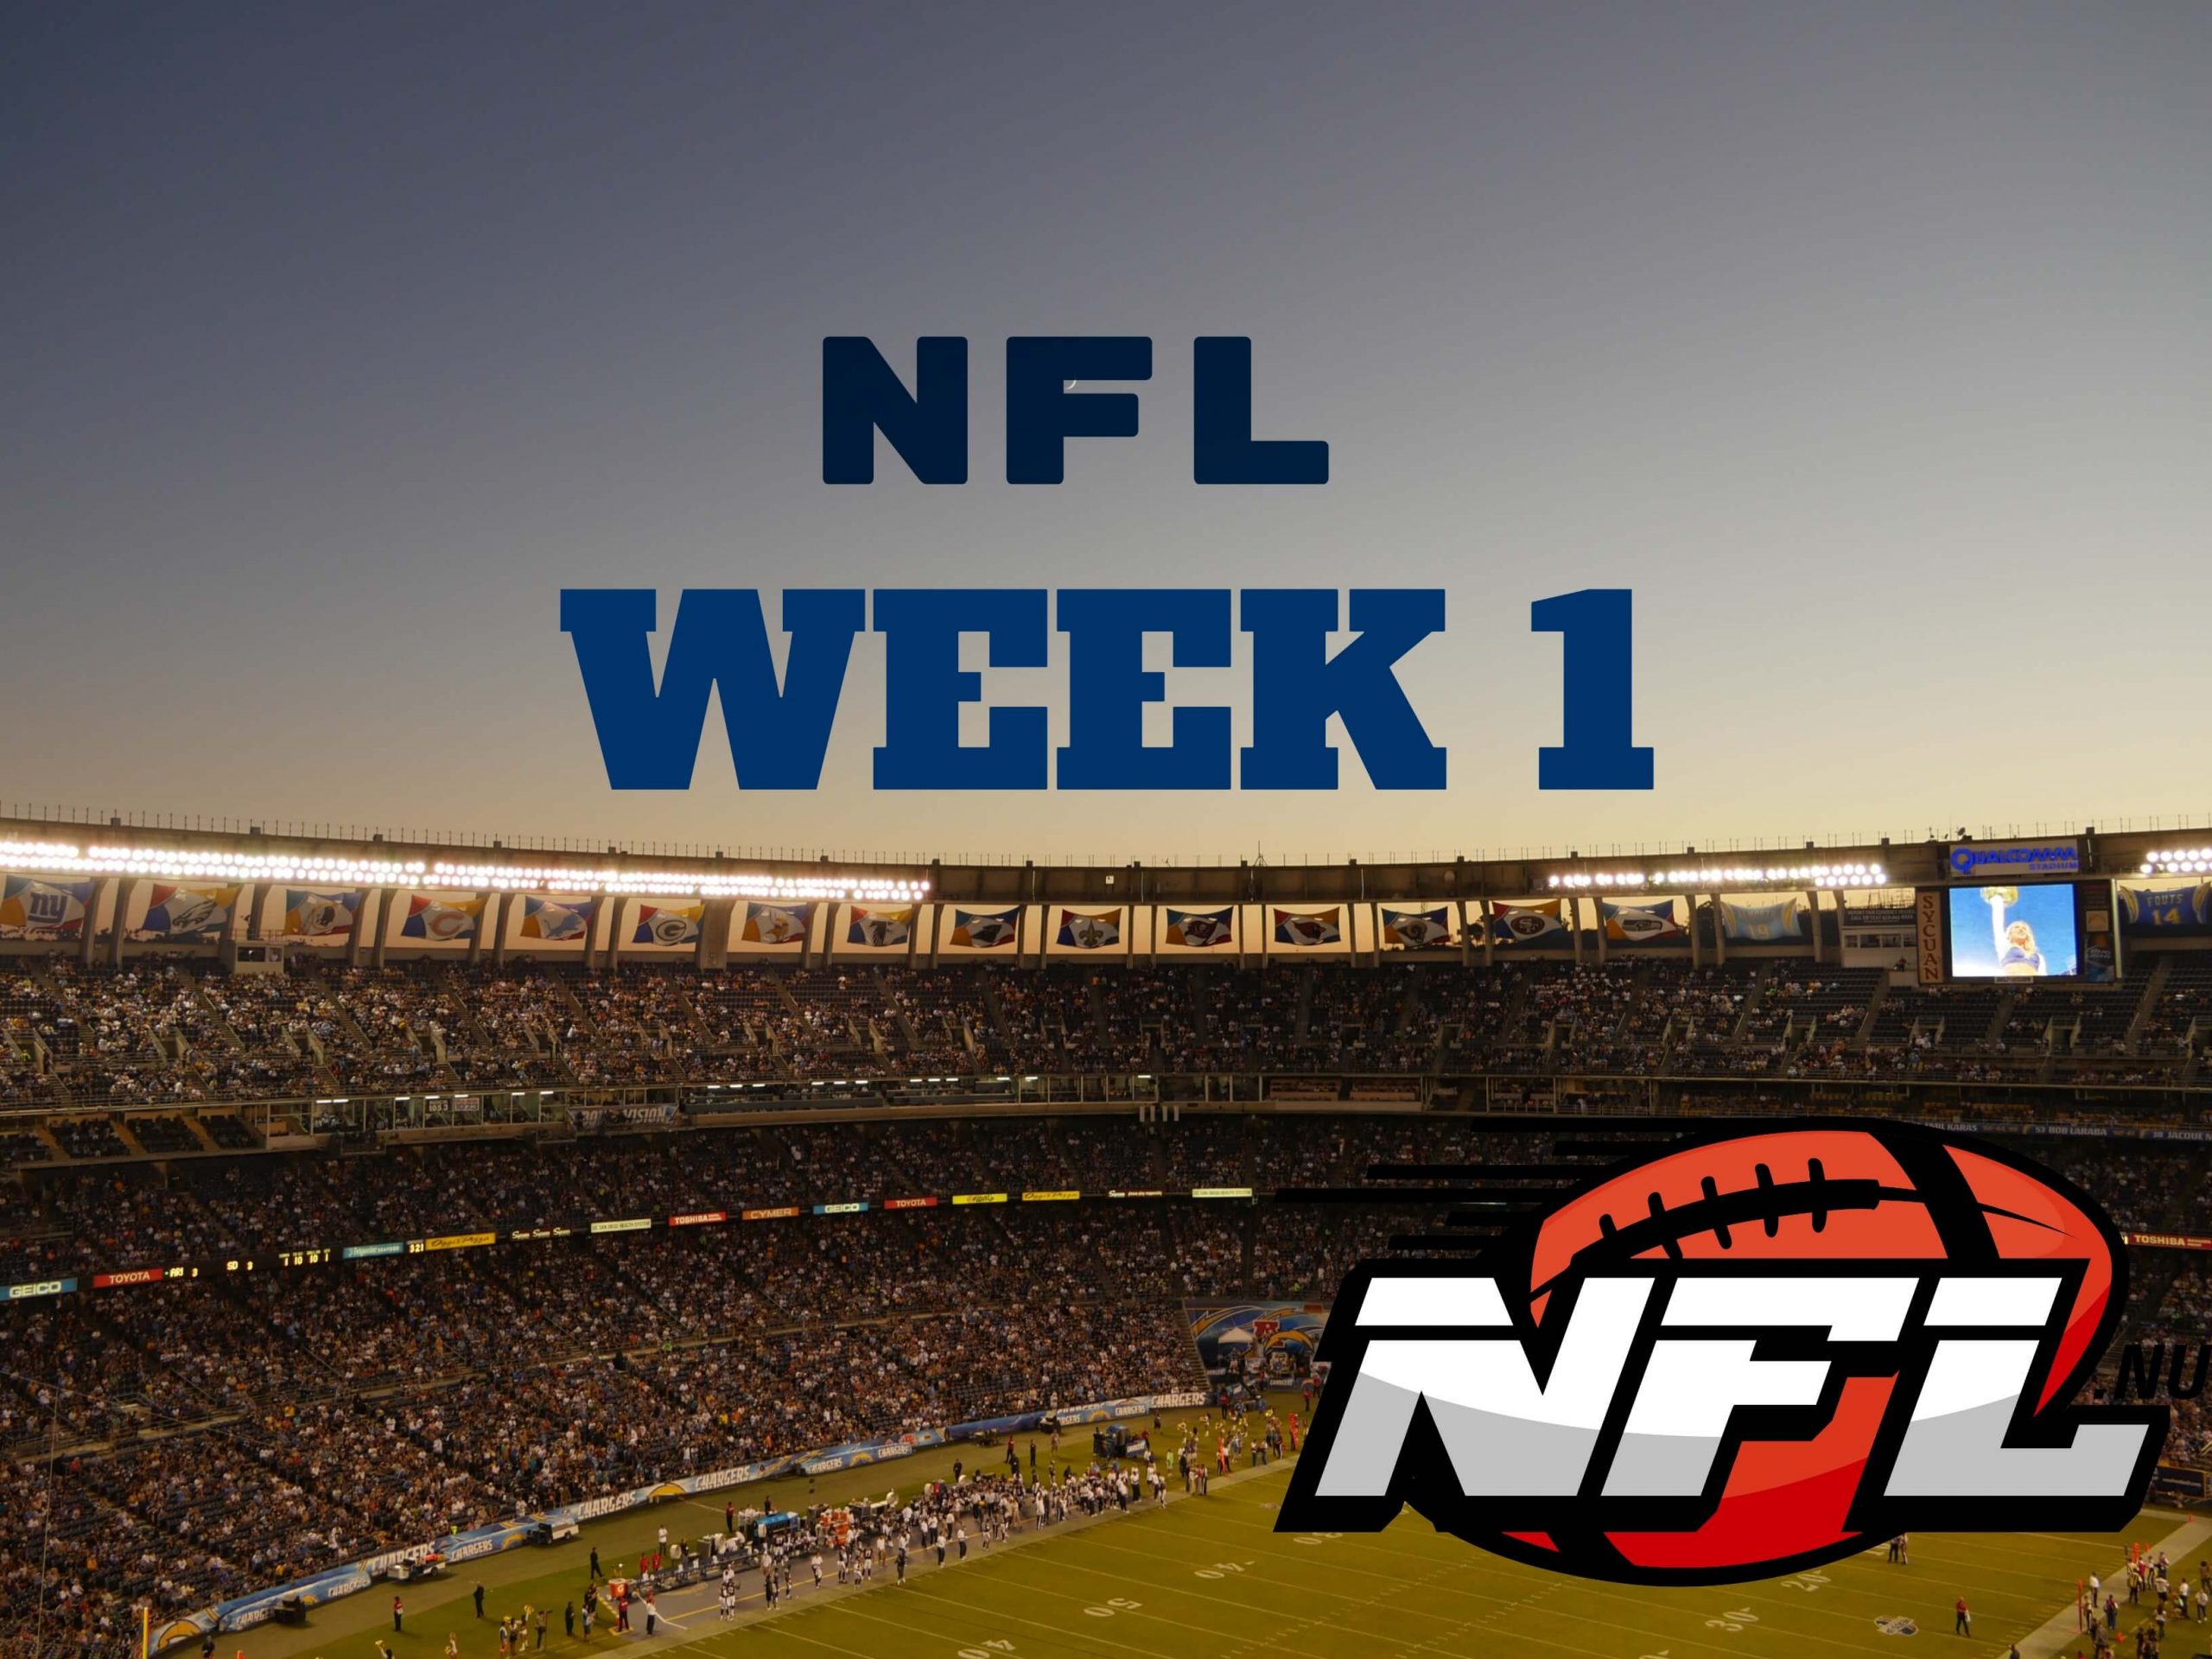 NFL week 1